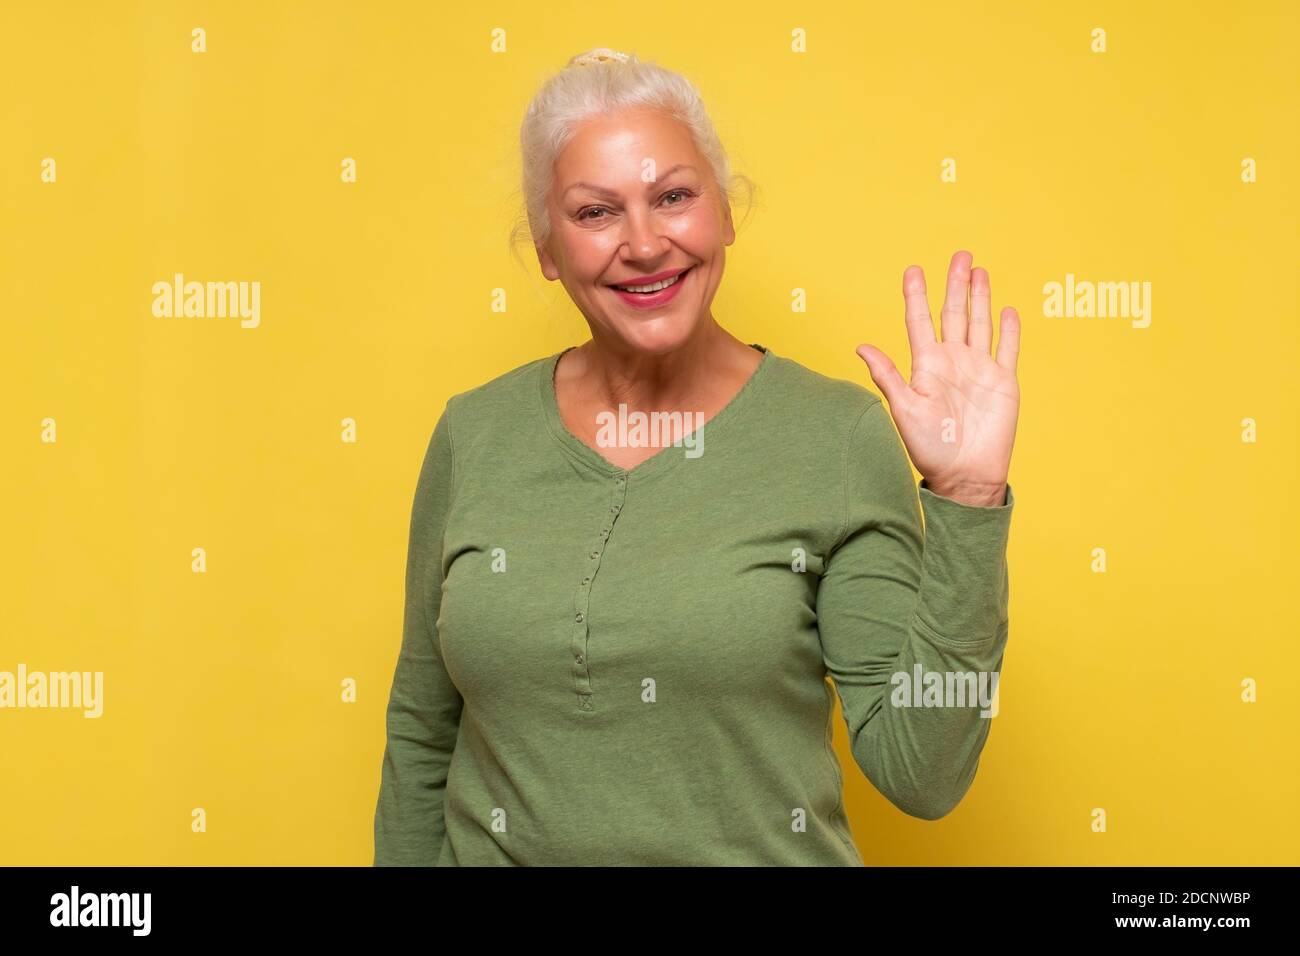 Senior friendly looking woman smiling happily, saying Hello, Hi or Bye, waving hand at camera. Stock Photo